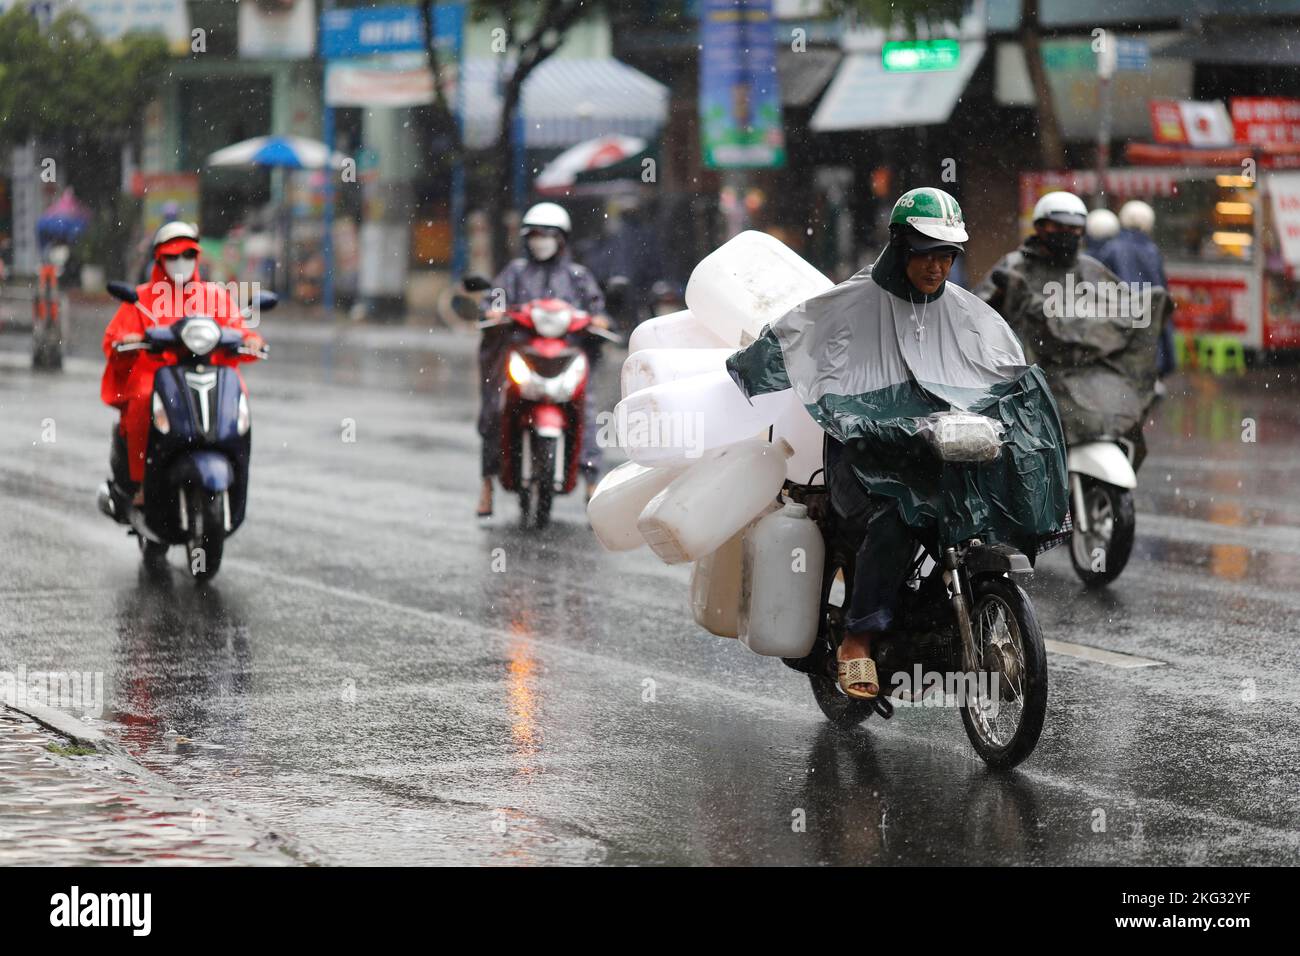 Vietnamesen mit Helm und Regenmantel fahren bei starkem Regen Motorrad, Wasser auf der Straße. Regenzeit in Saigon, Ho-Chi-Minh-Stadt. Vietnam. Stockfoto